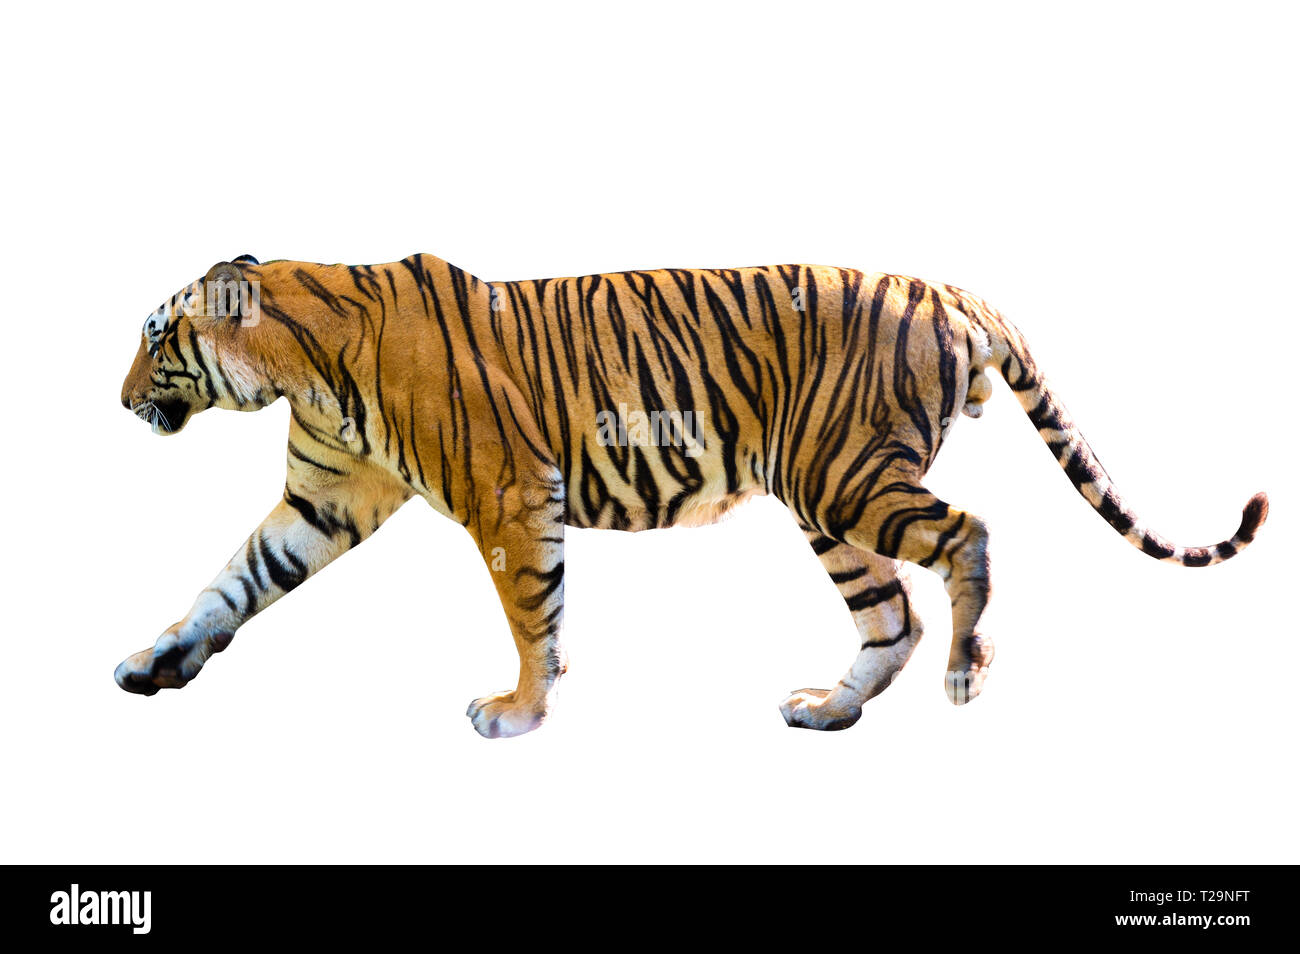 Tiger sfondo bianco isolare il corpo pieno Foto Stock